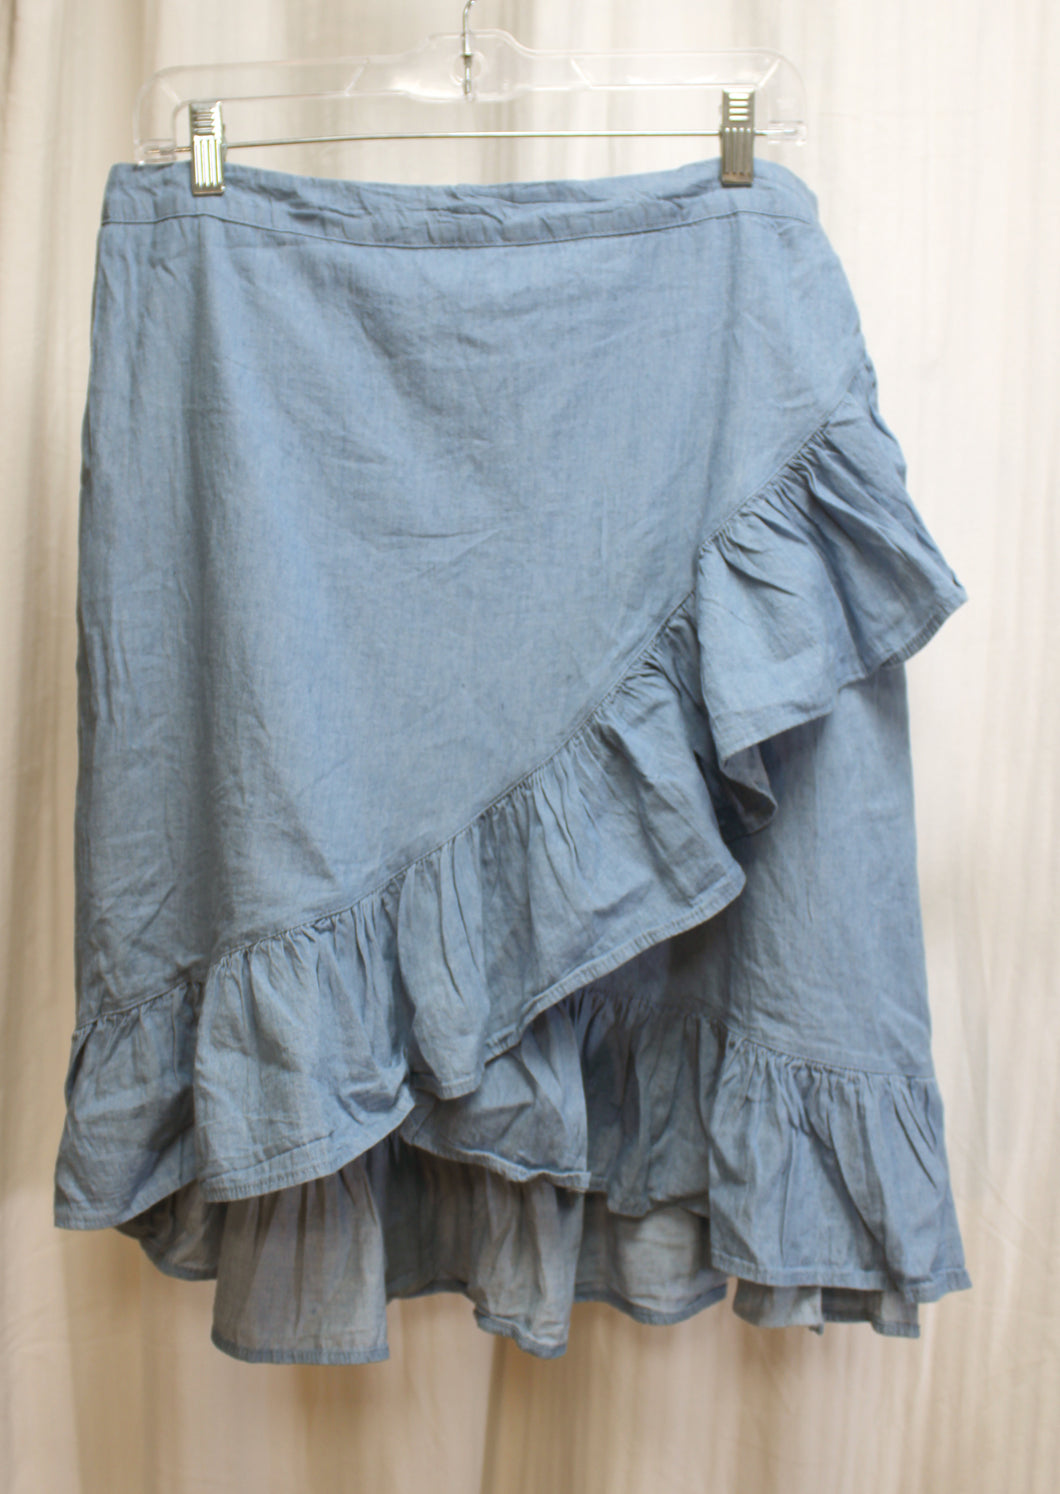 Metrowear - Blue Chambray Faux Wrap Ruffle Midi Skirt - Size L 9w/ TAGS)